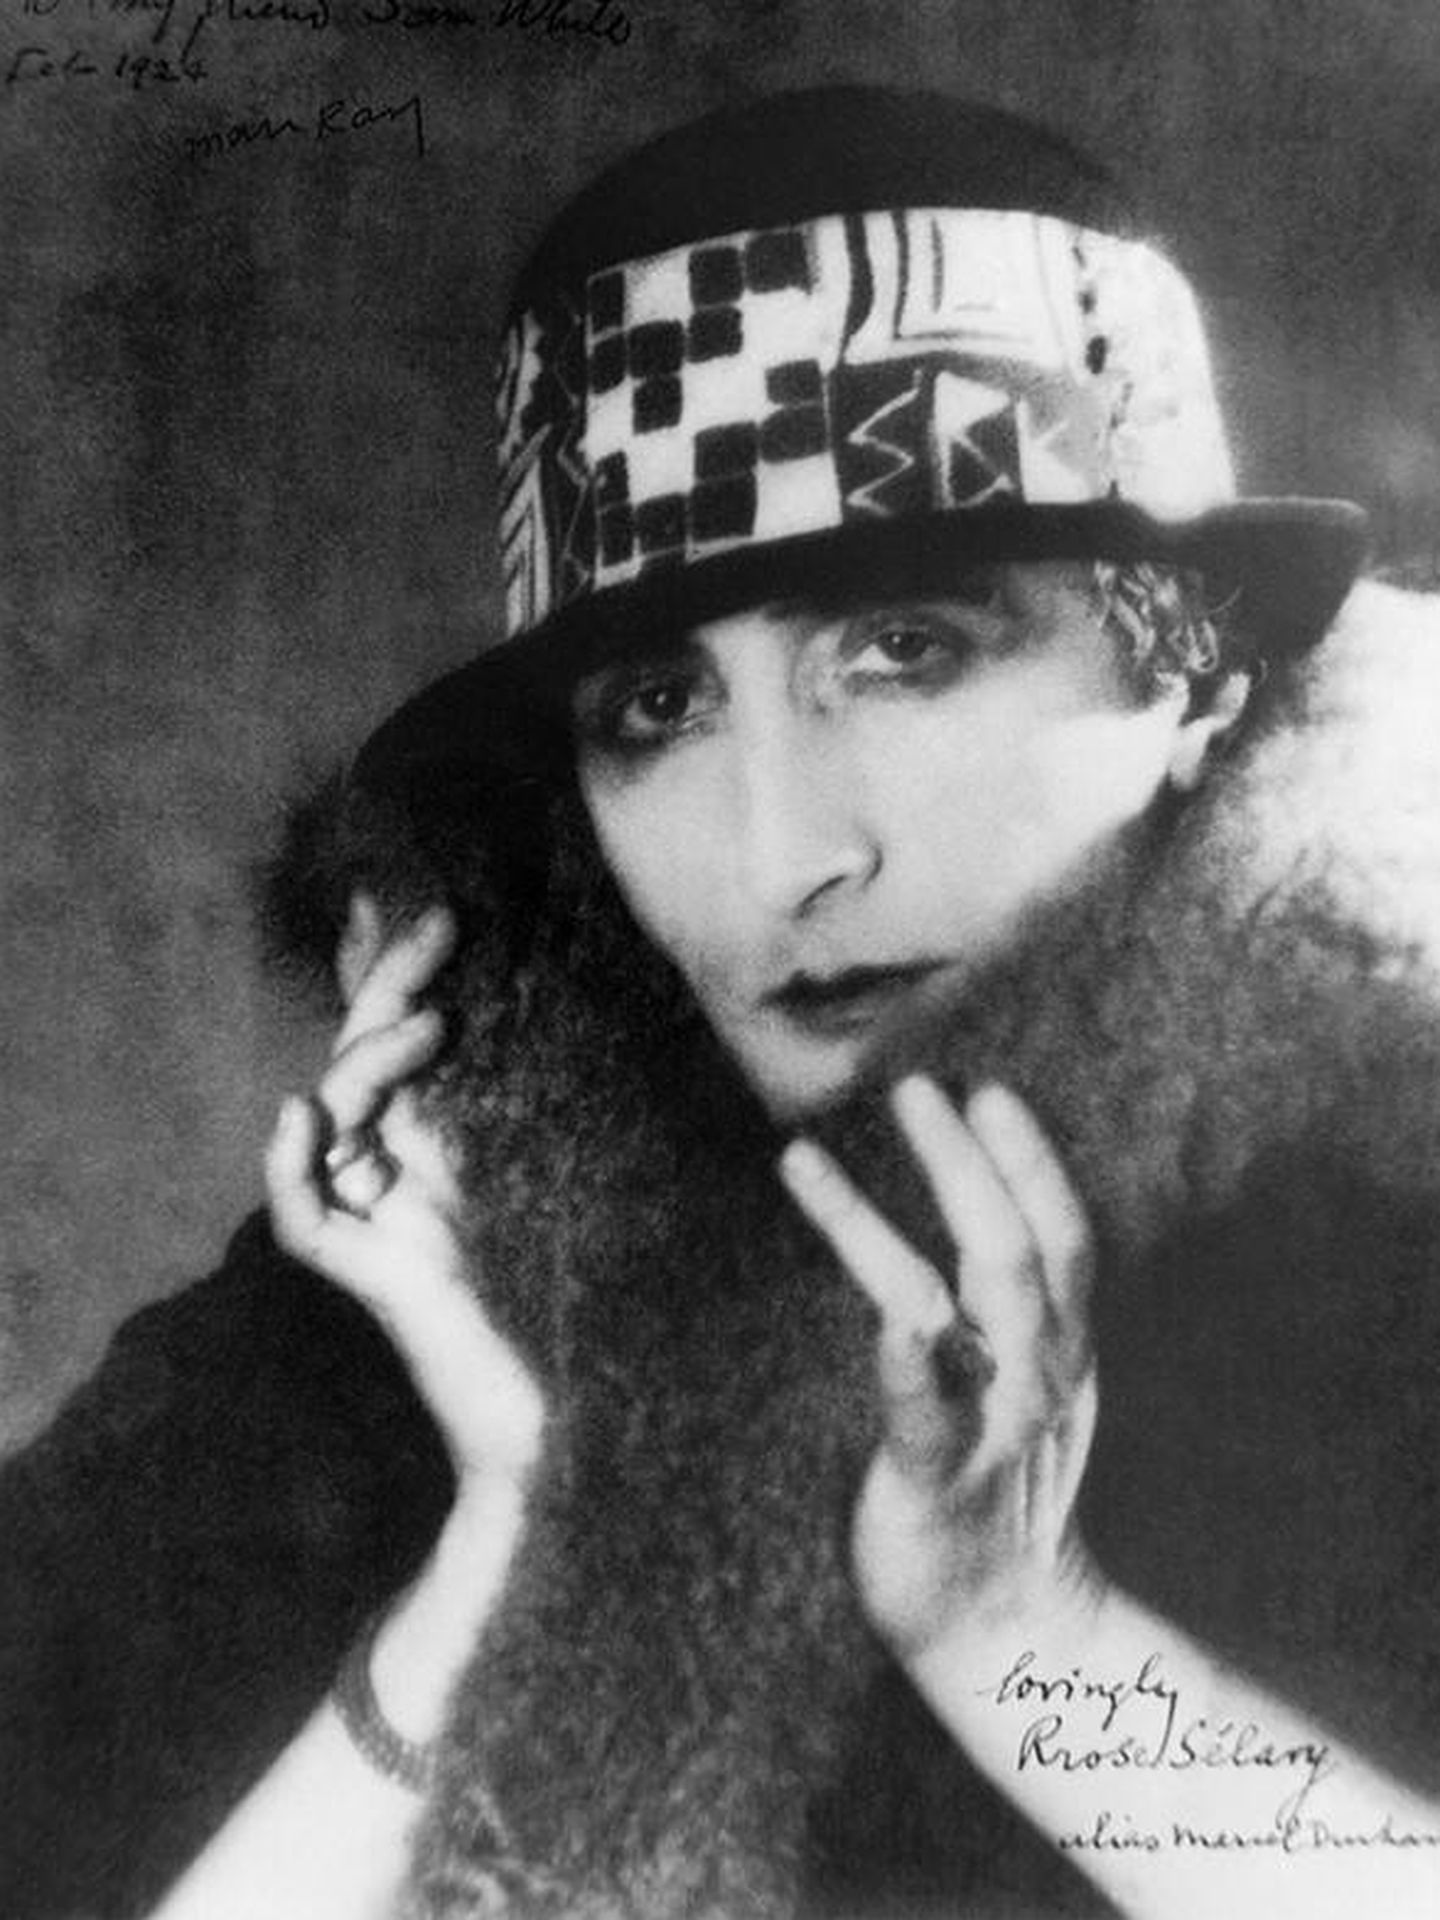 Marcel Duchamp retratado como su álter ego 'Rrose Sélavy' (del fráncés 'C'est la vie')